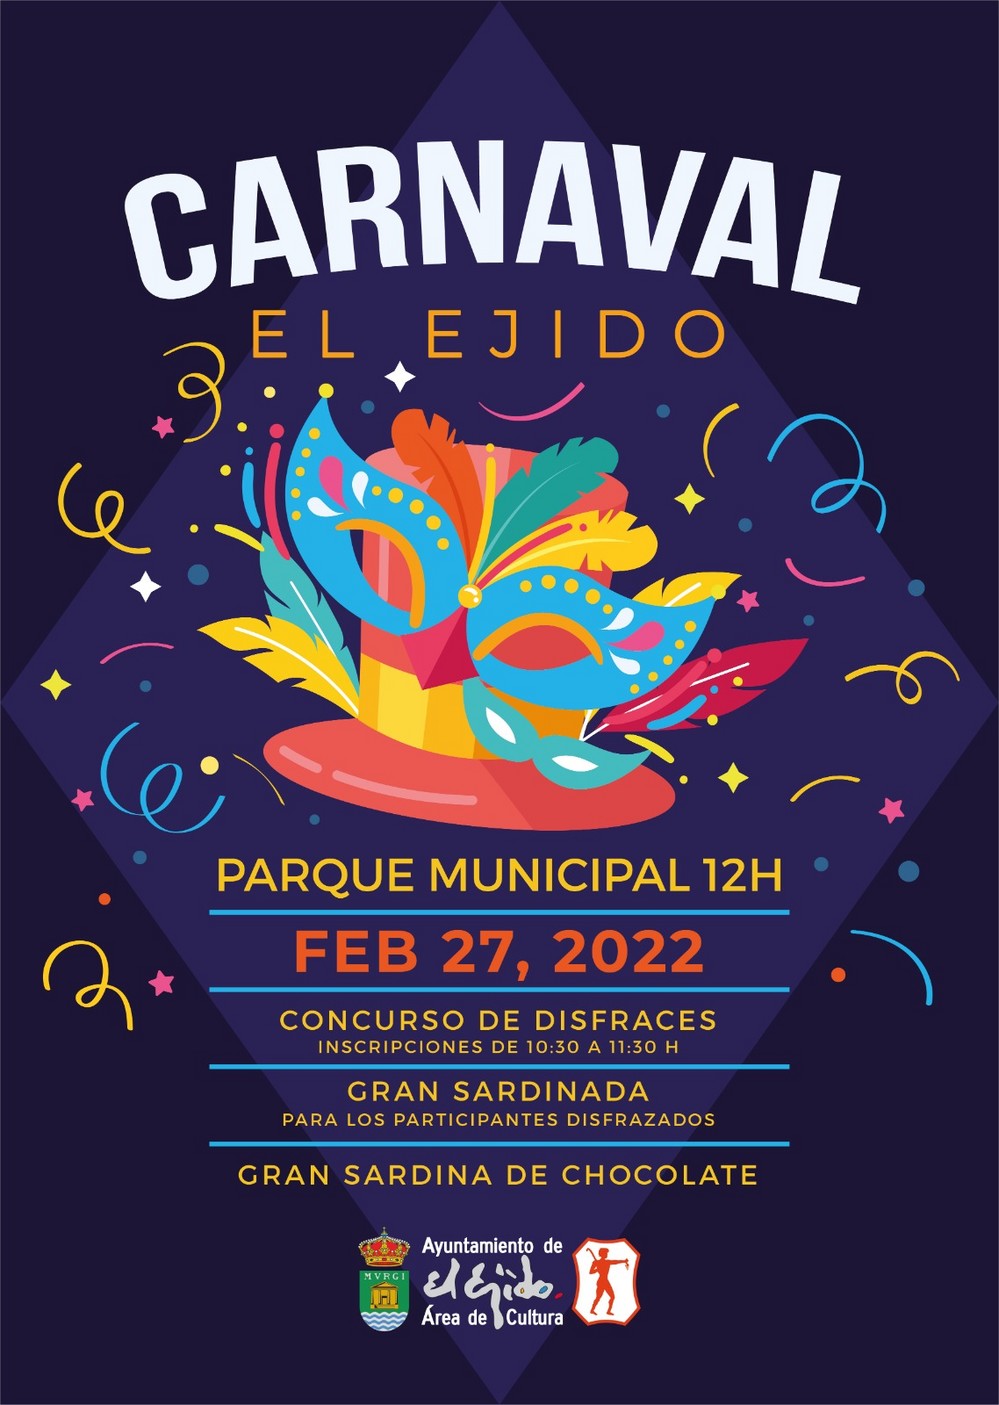 Los ejidenses disfrutarán de un Carnaval con una gran sardina de chocolate de 90 kilos en el Parque Municipal